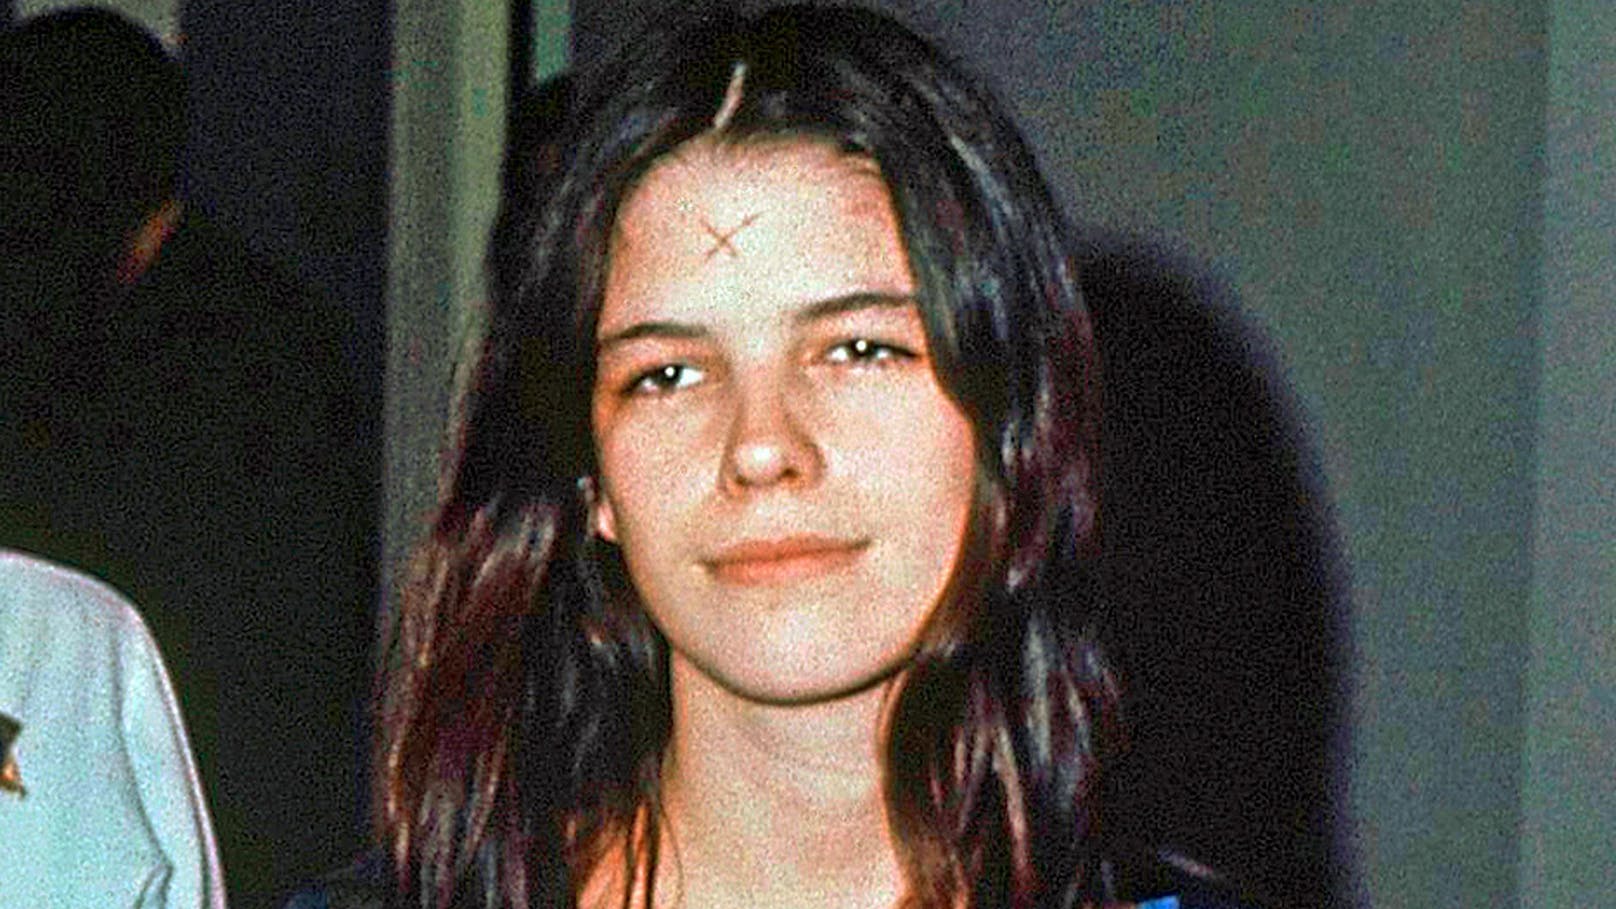 Bereits mit 19 Jahren trat Leslie Van Houten der Mörder-Sekte "Manson Family" bei.